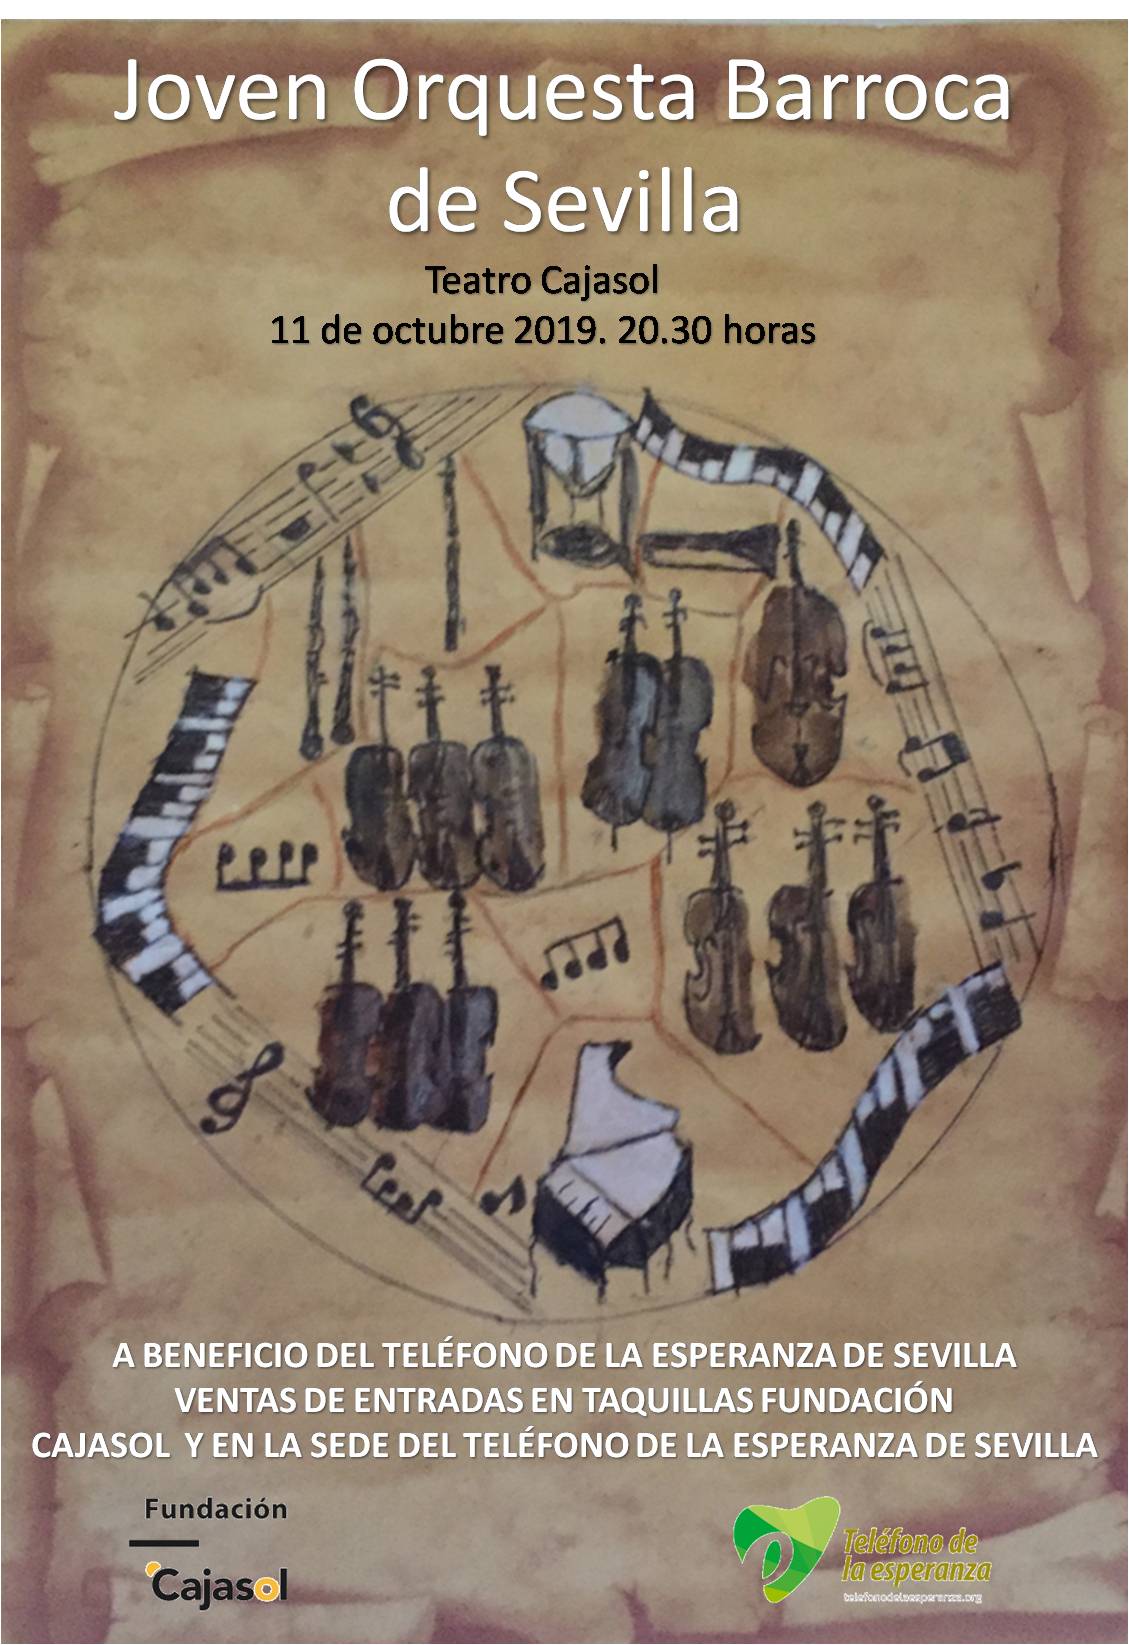 Cartel del concierto de la Joven Orquesta Barroca de Sevilla a beneficio del Teléfono de la Esperanza en la Fundación Cajasol